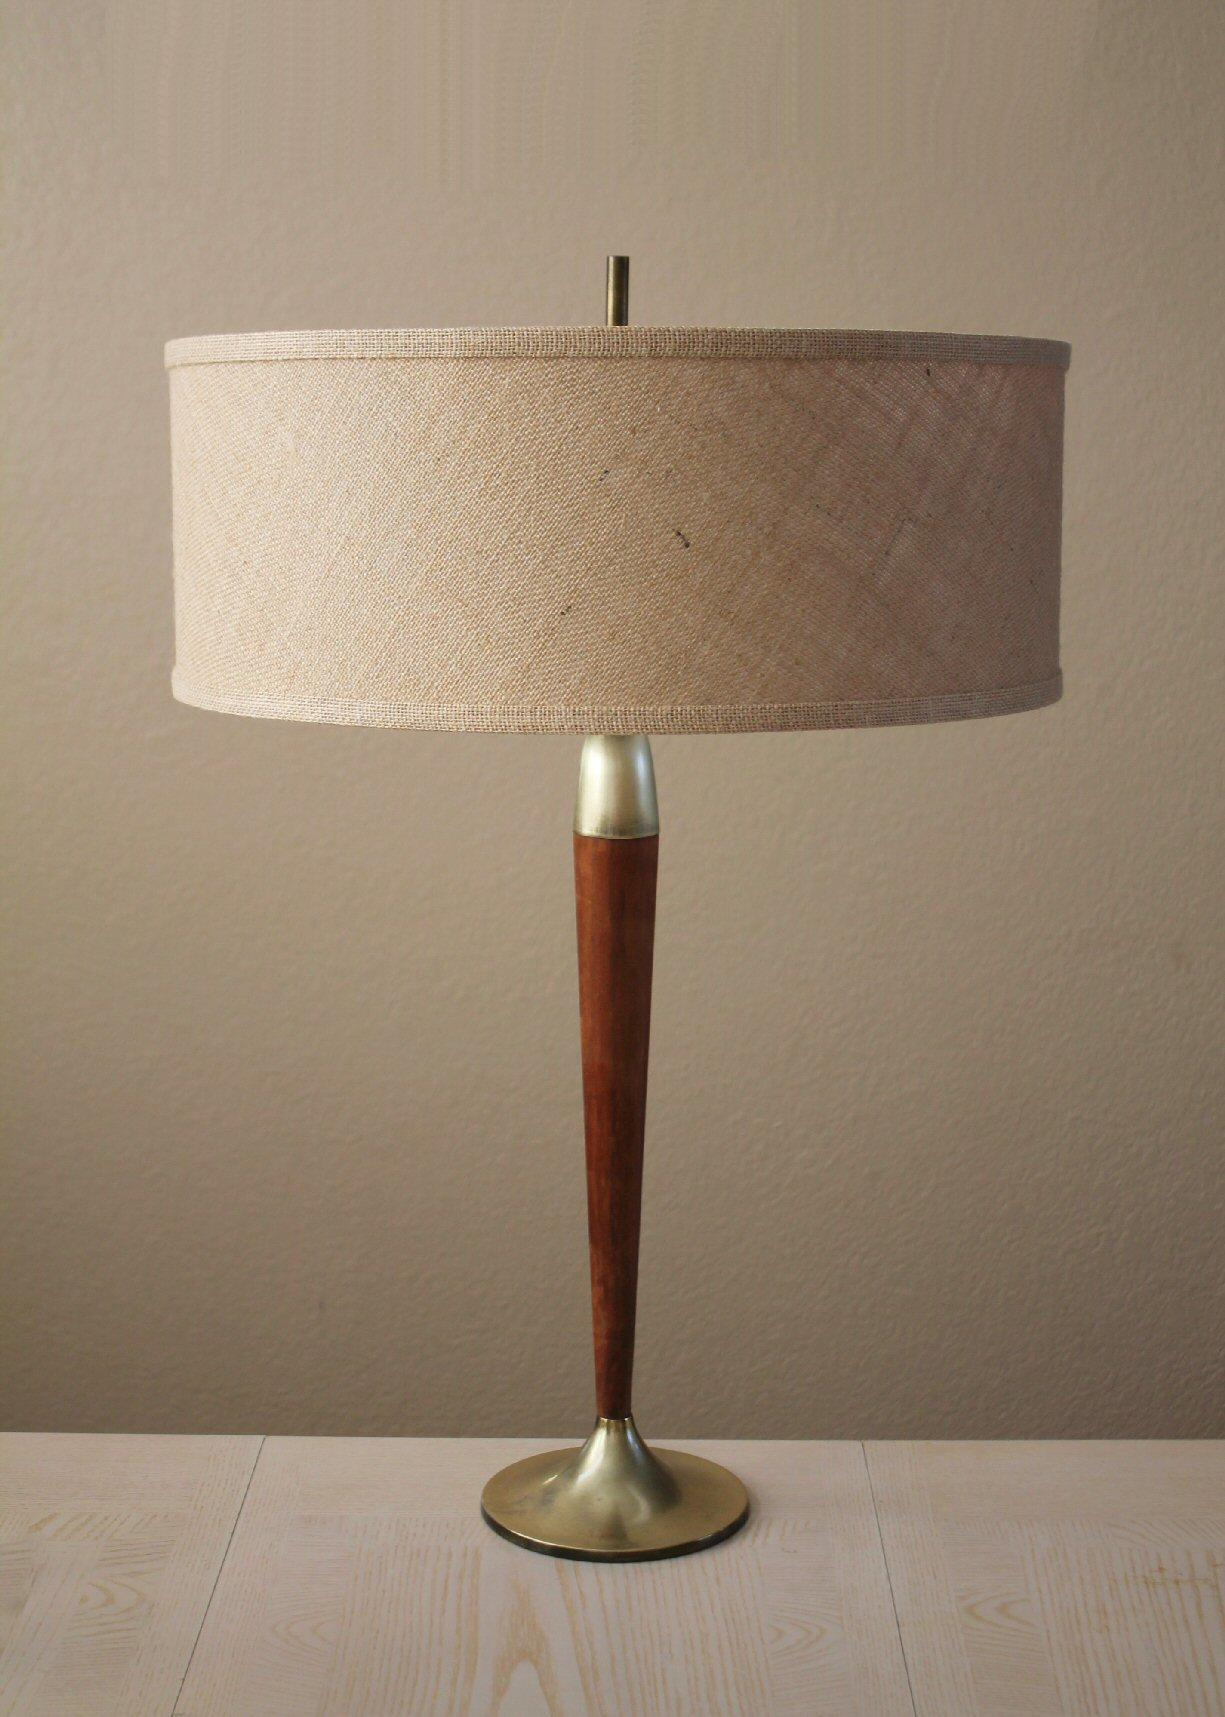 American Mid Century Danish Modern Table Lamp! Gerald Thurston Era  1950s Brass & Walnut